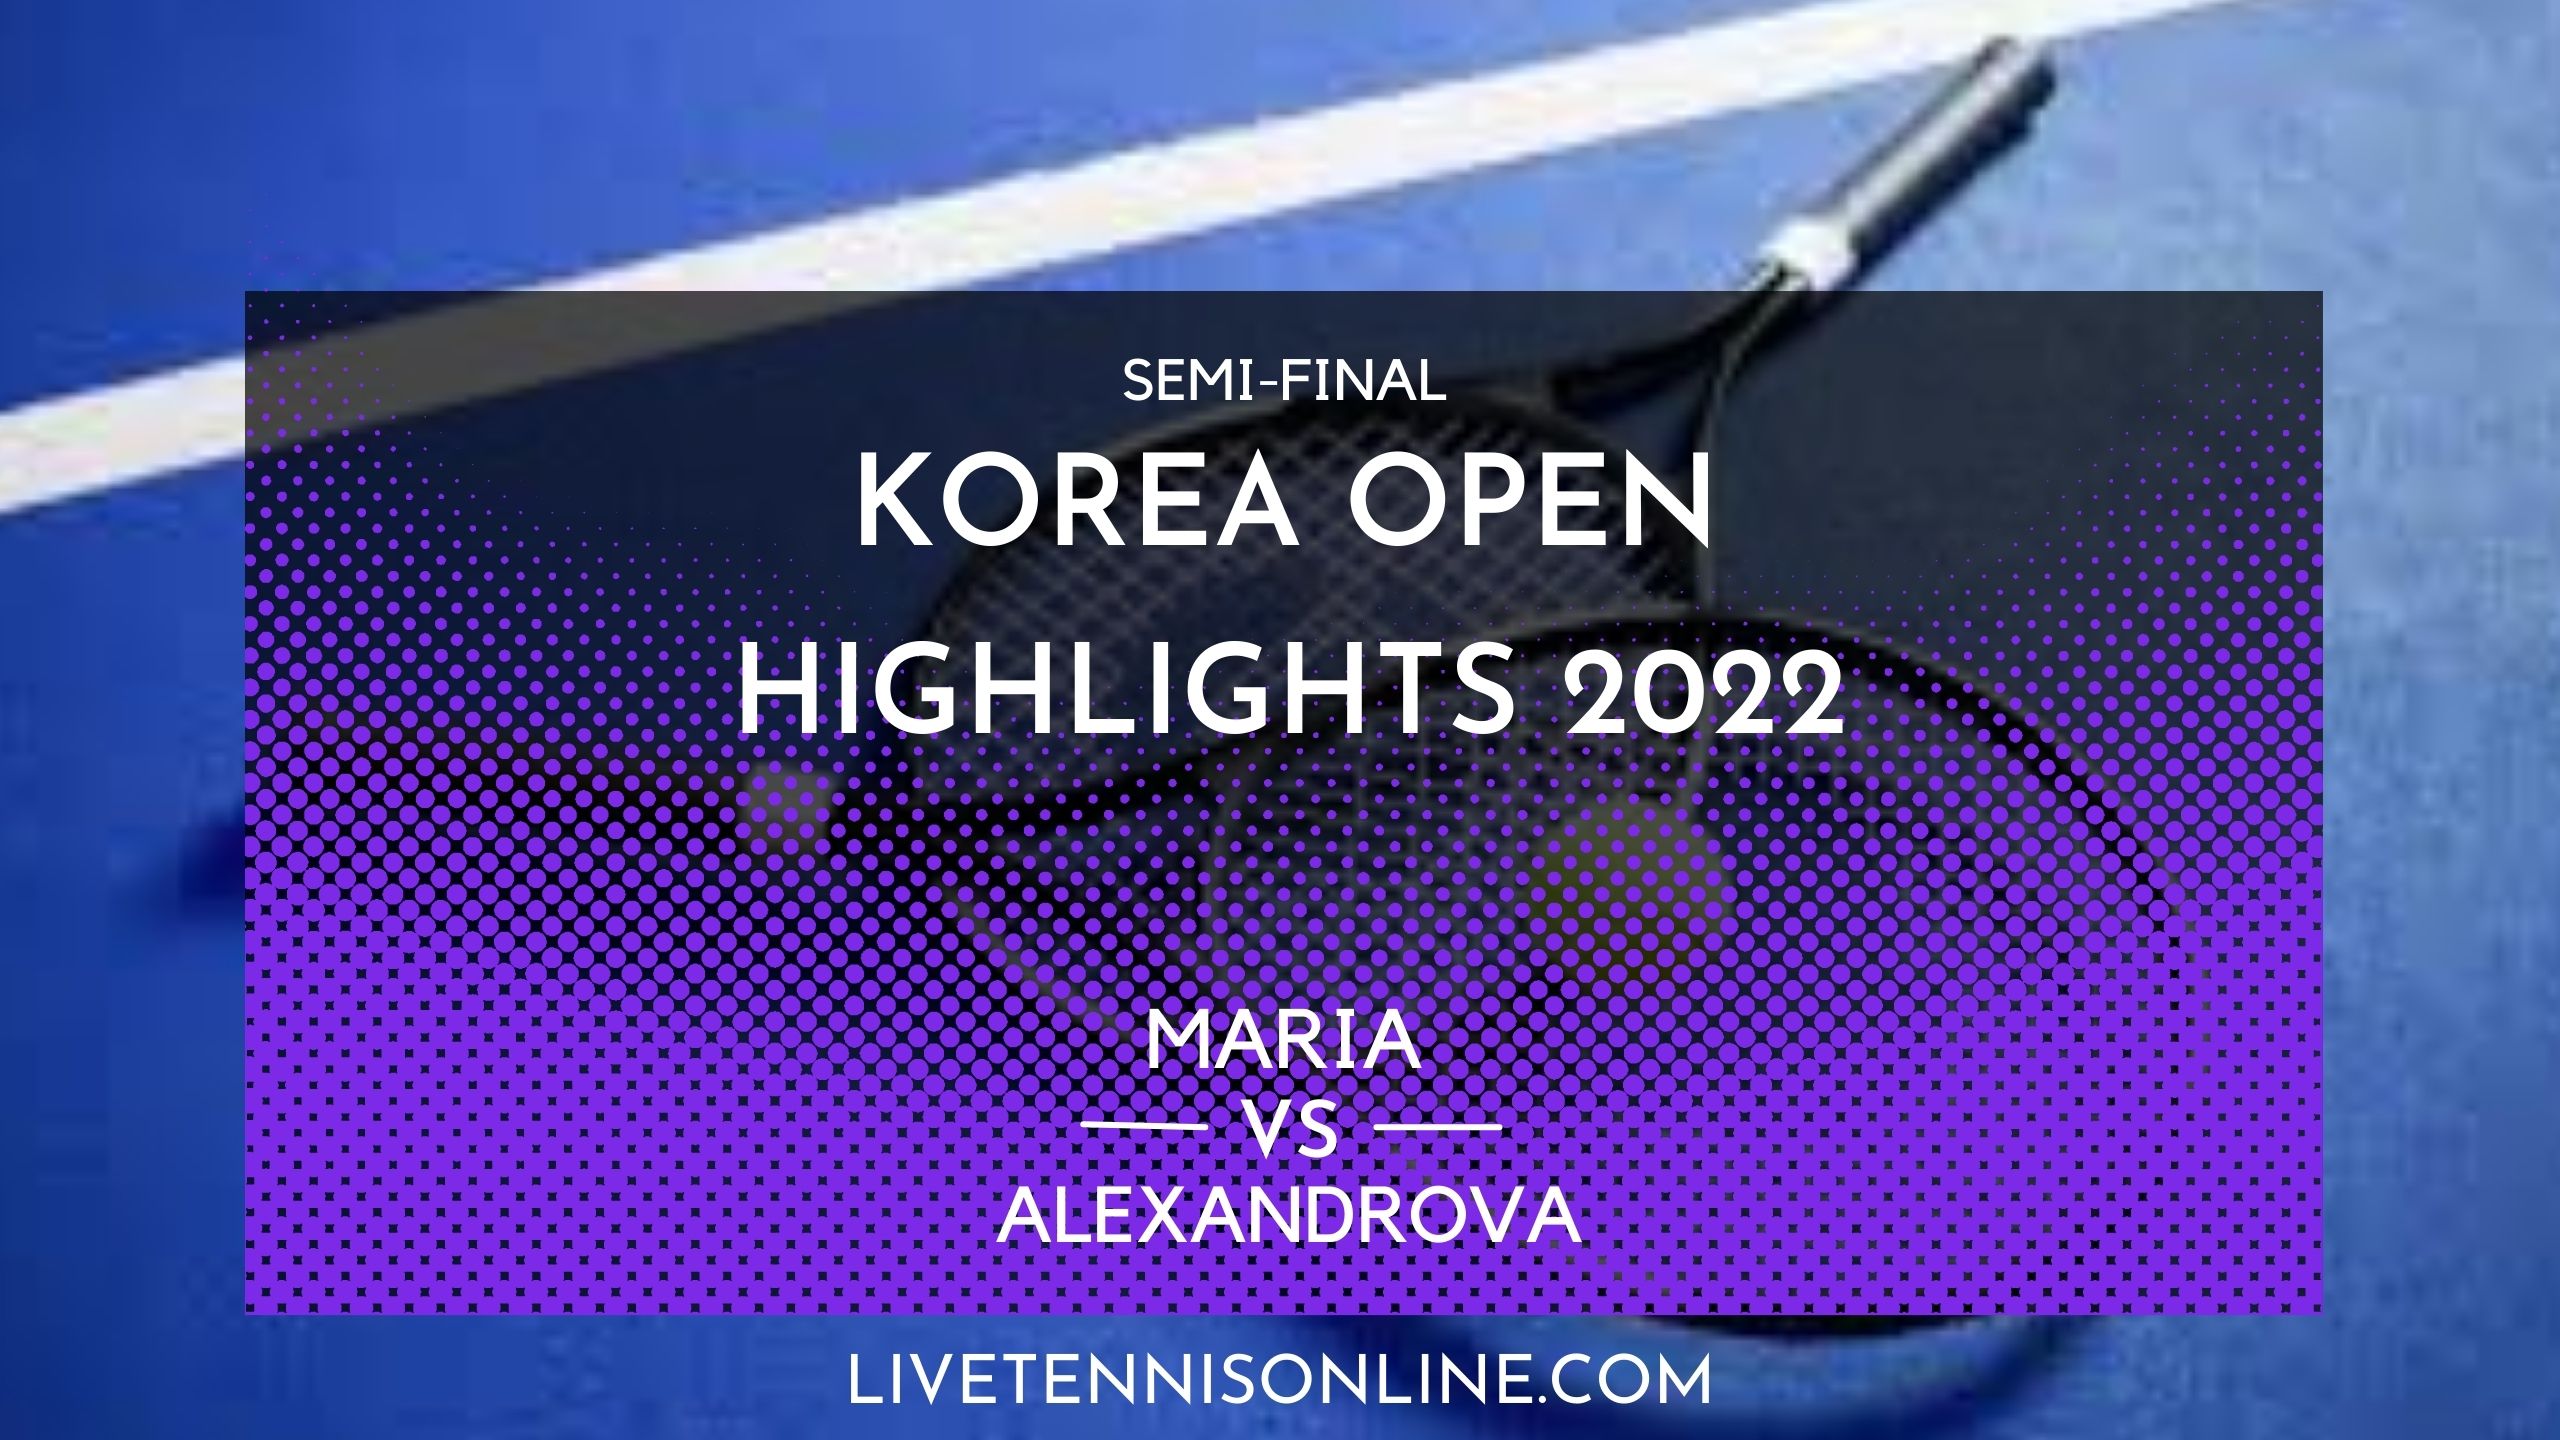 Maria Vs Alexandrova SF Highlights 2022 Korea Open